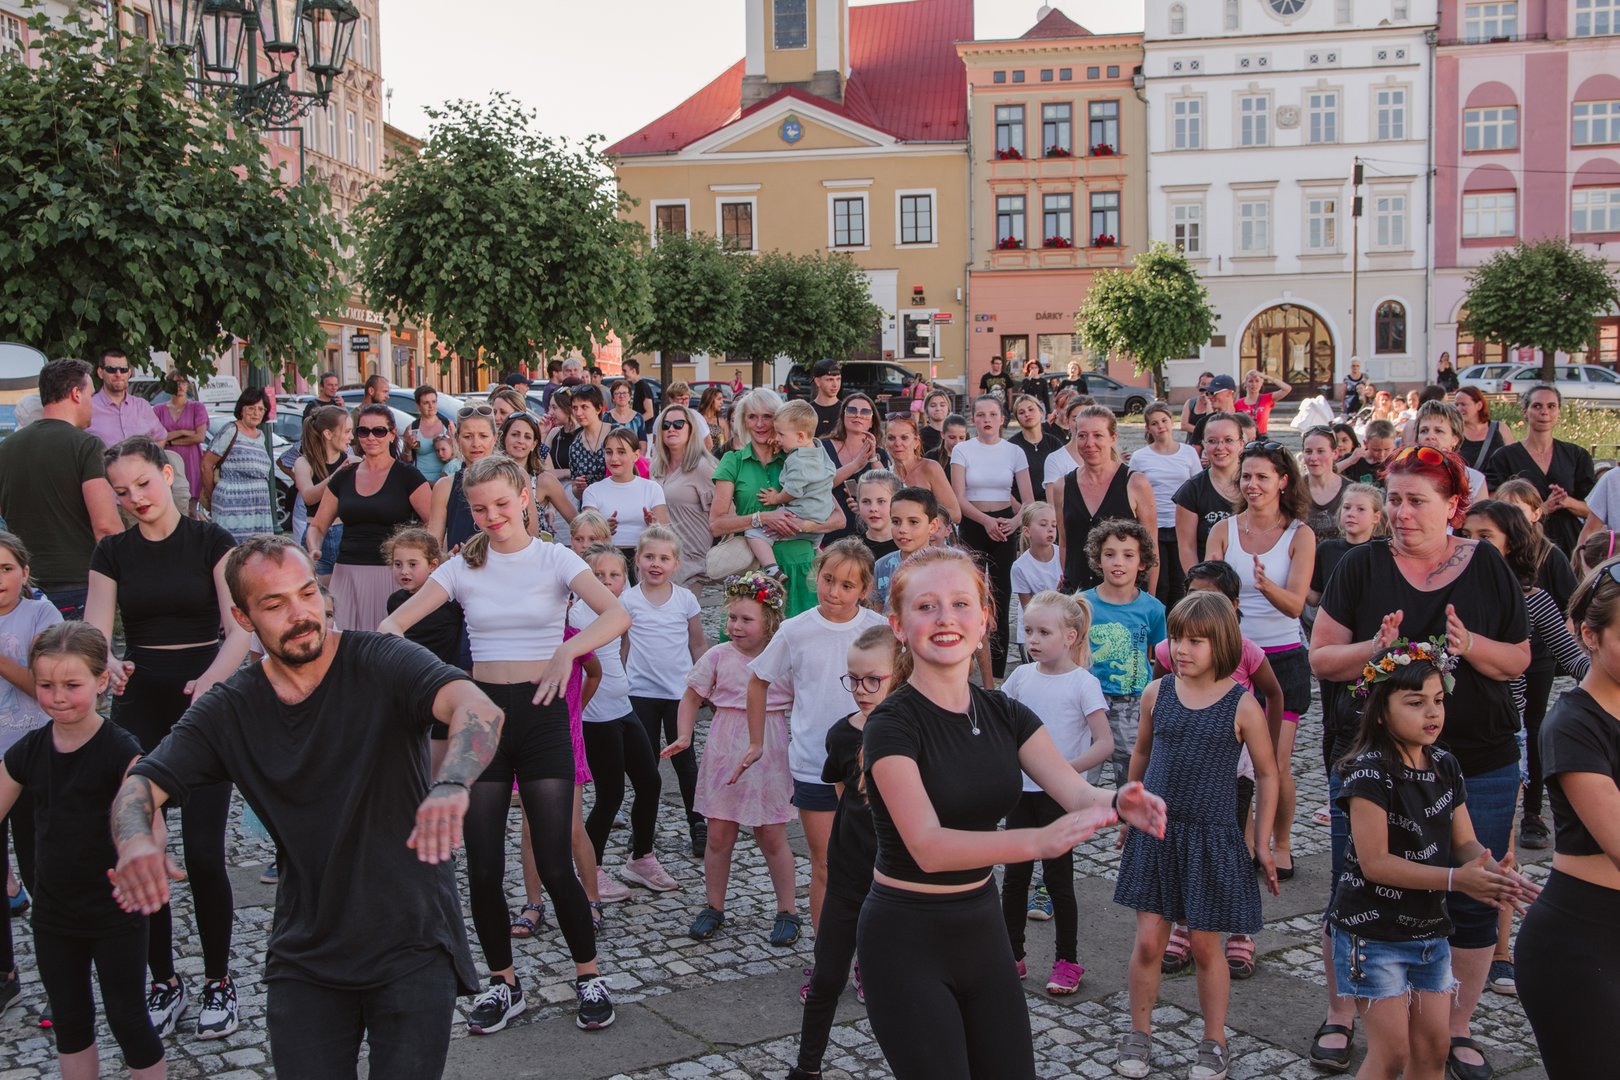 Taneční vystoupení ZUŠ Broumov na Náměstí míru, ke kterému se přidali sami občané Broumova a společně oživili centrum města